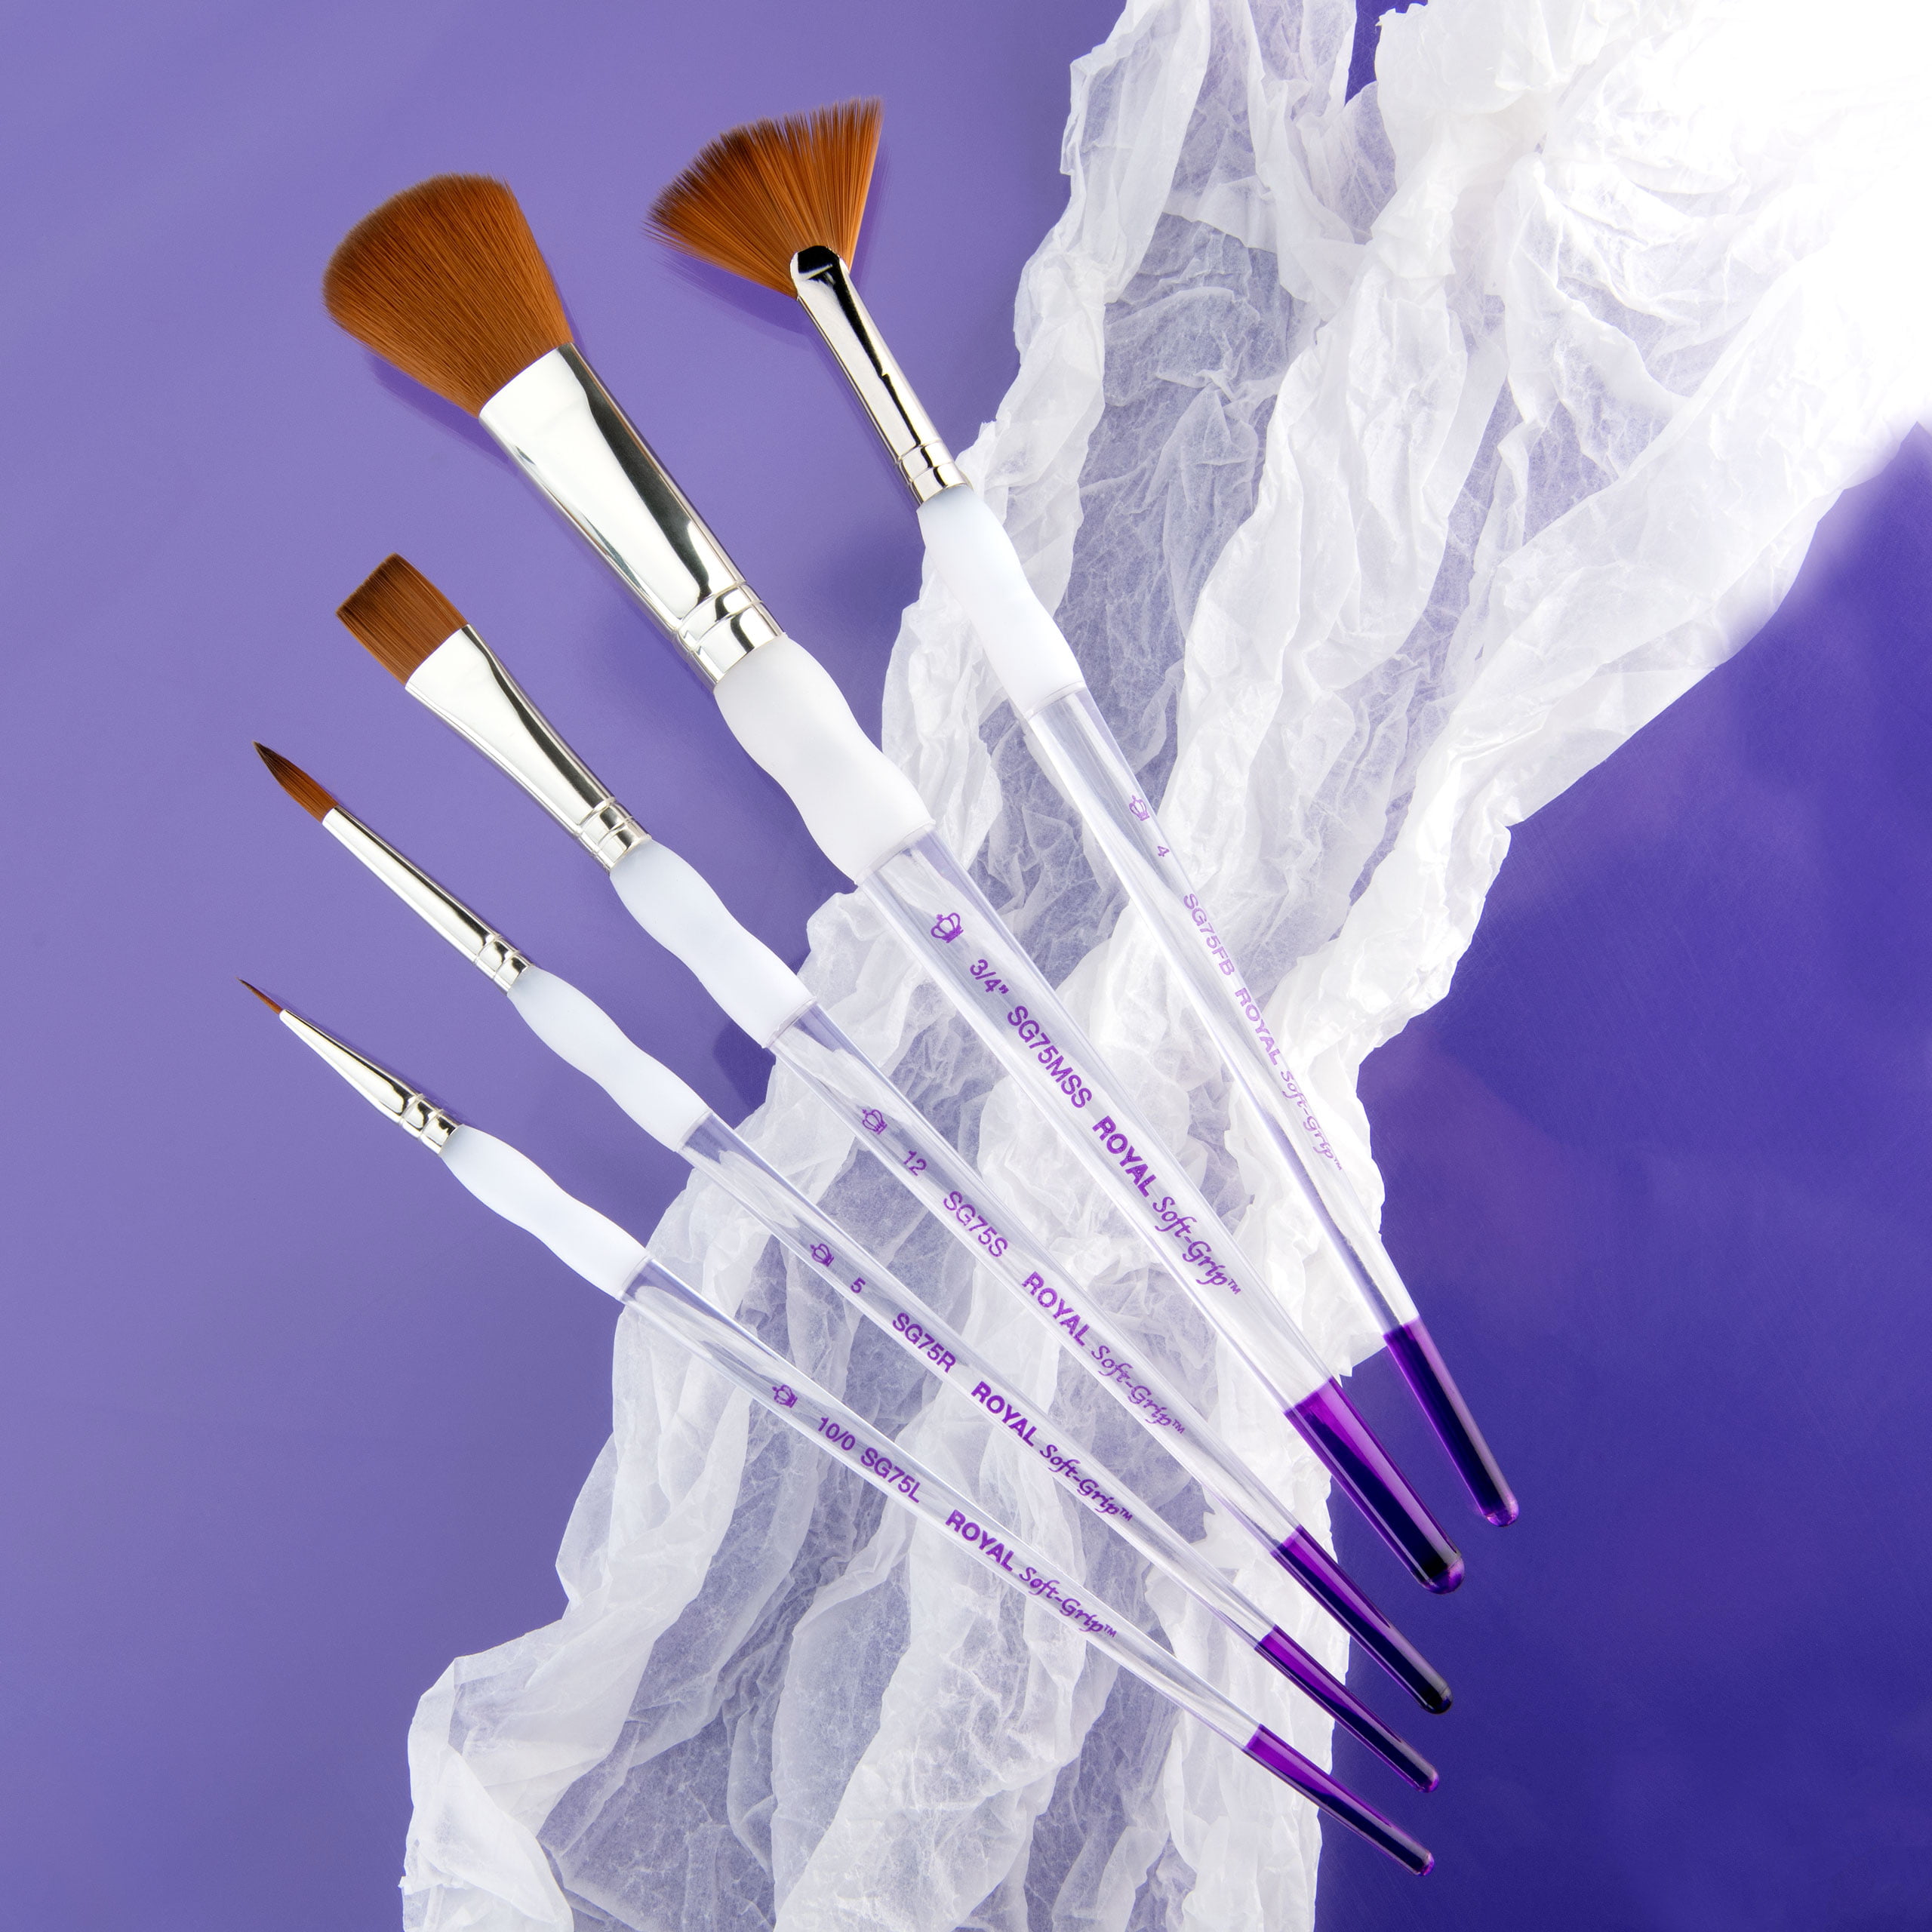 Buy Royal Soft Grip White Blending Mop Brush - Artist Paint Brush